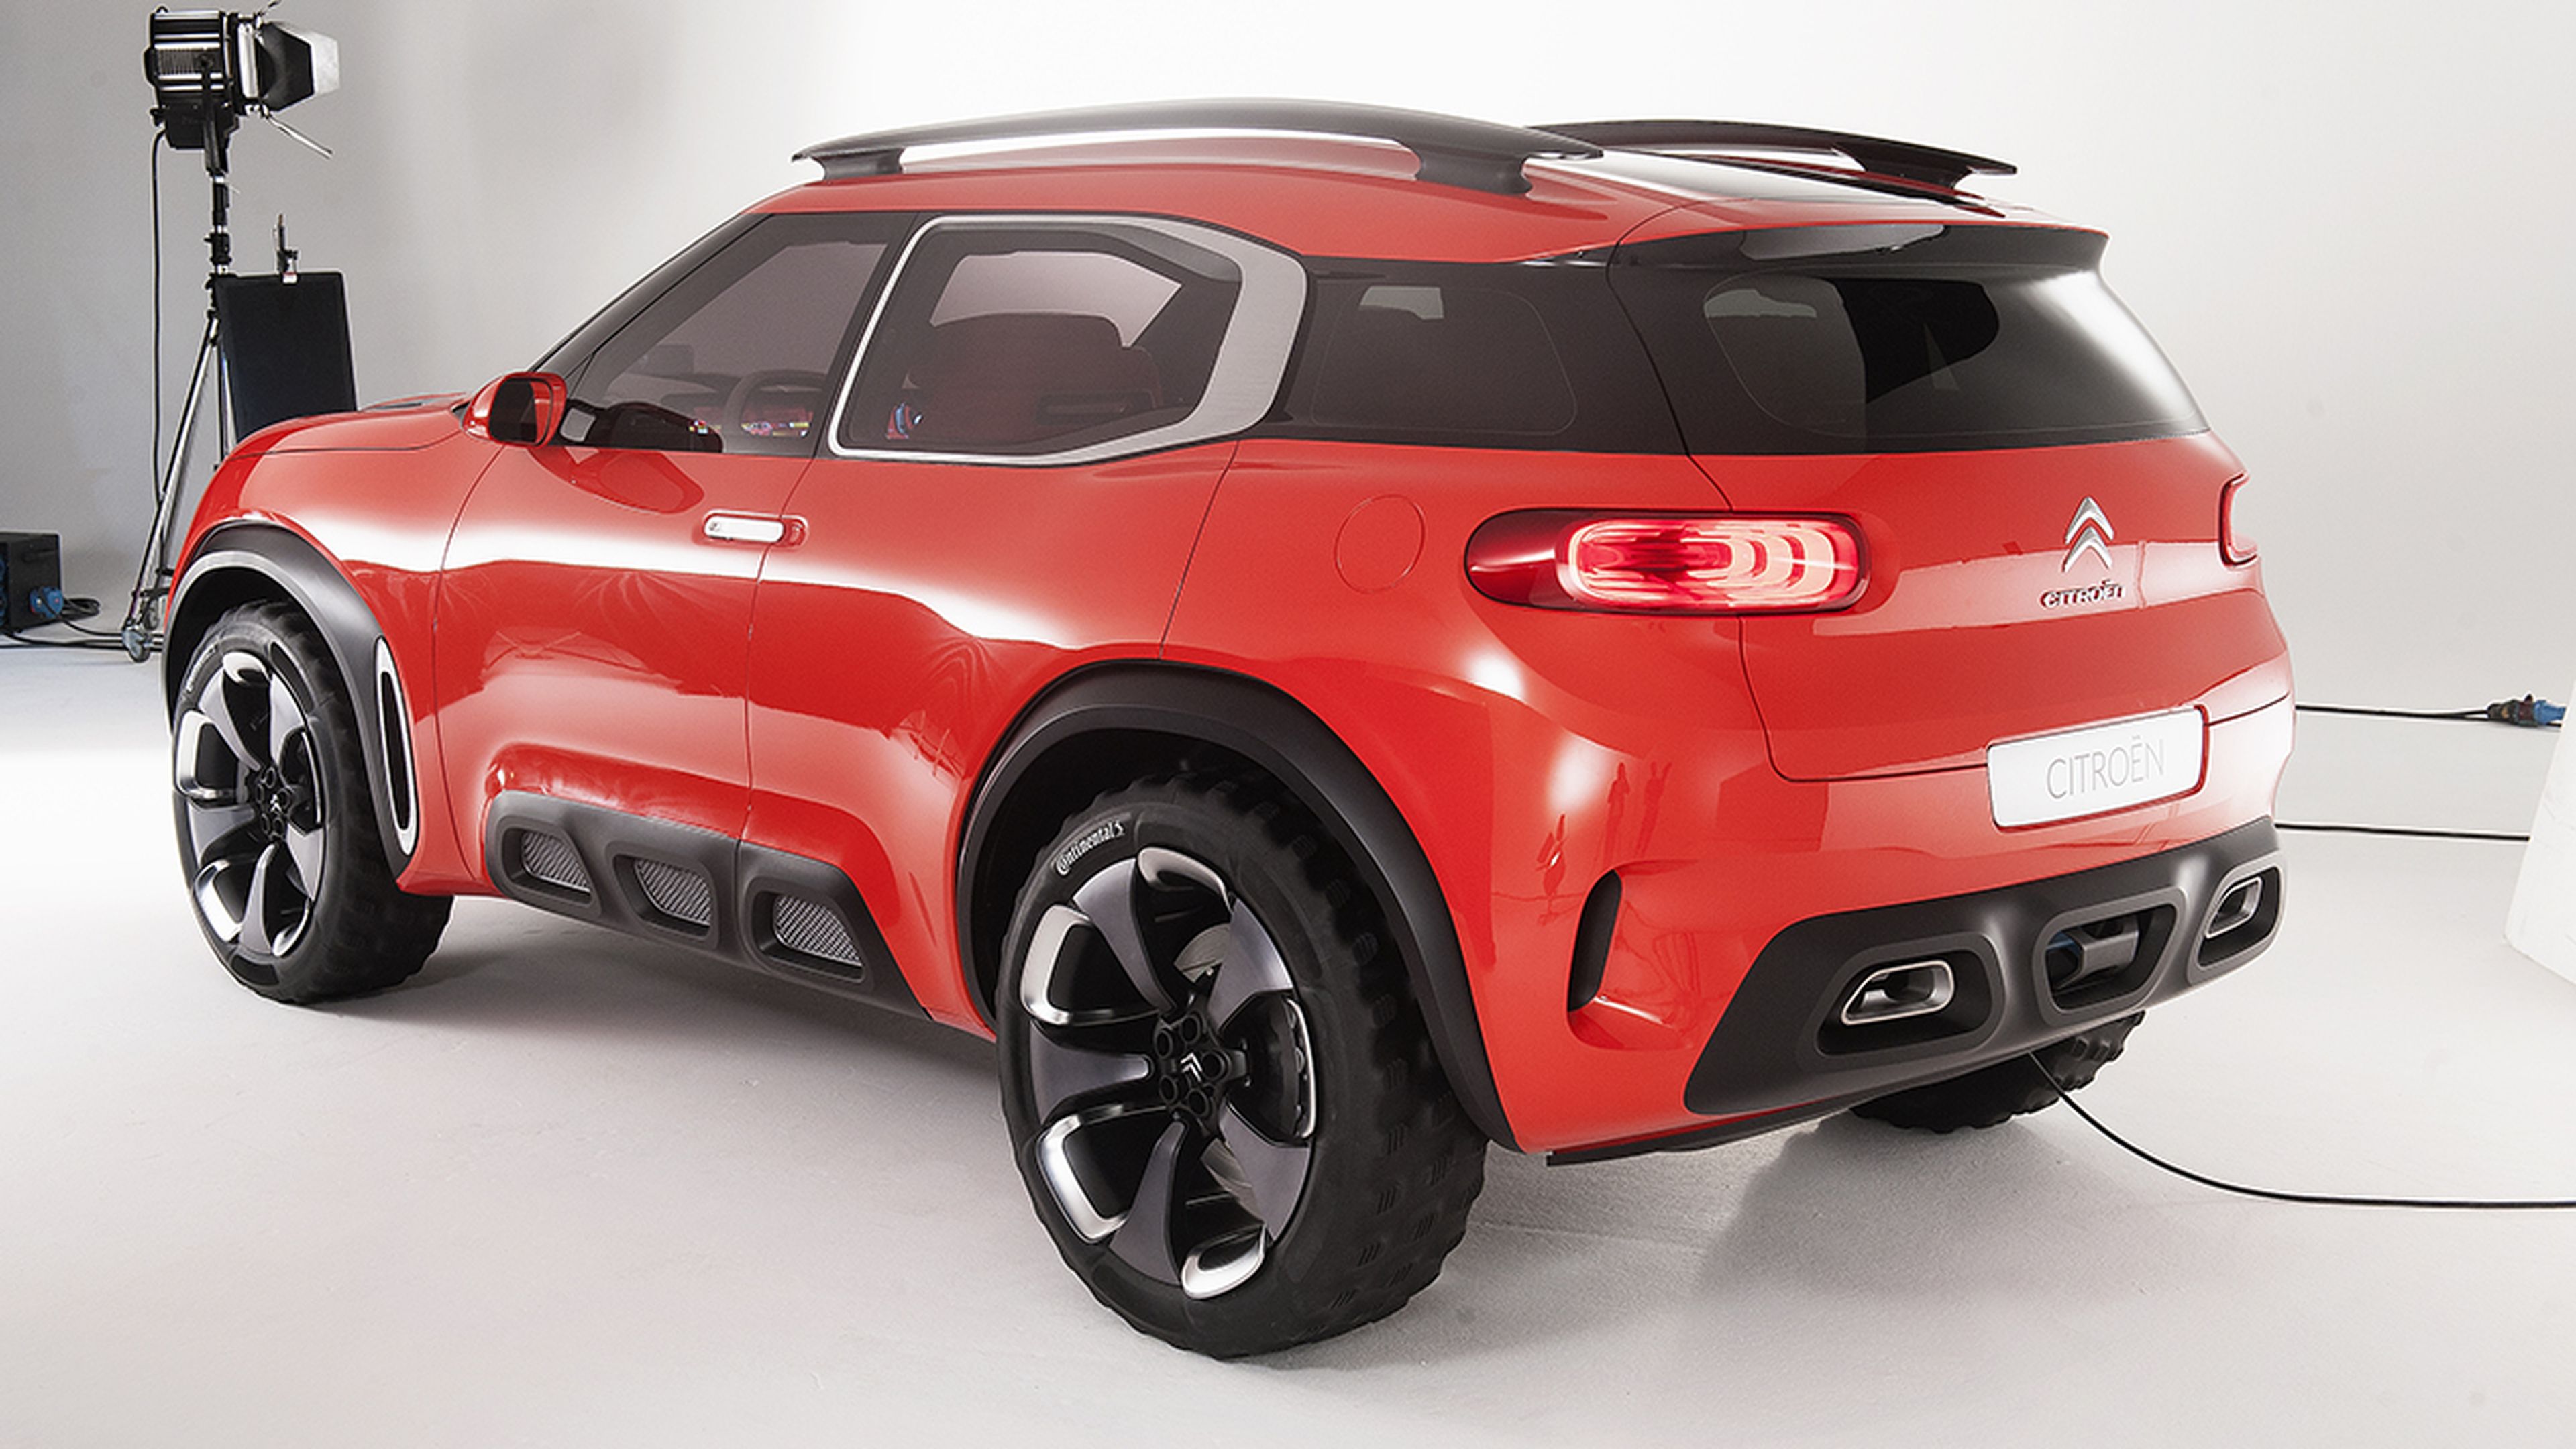 Las novedades de Citroën en el Salón de Shanghái 2015